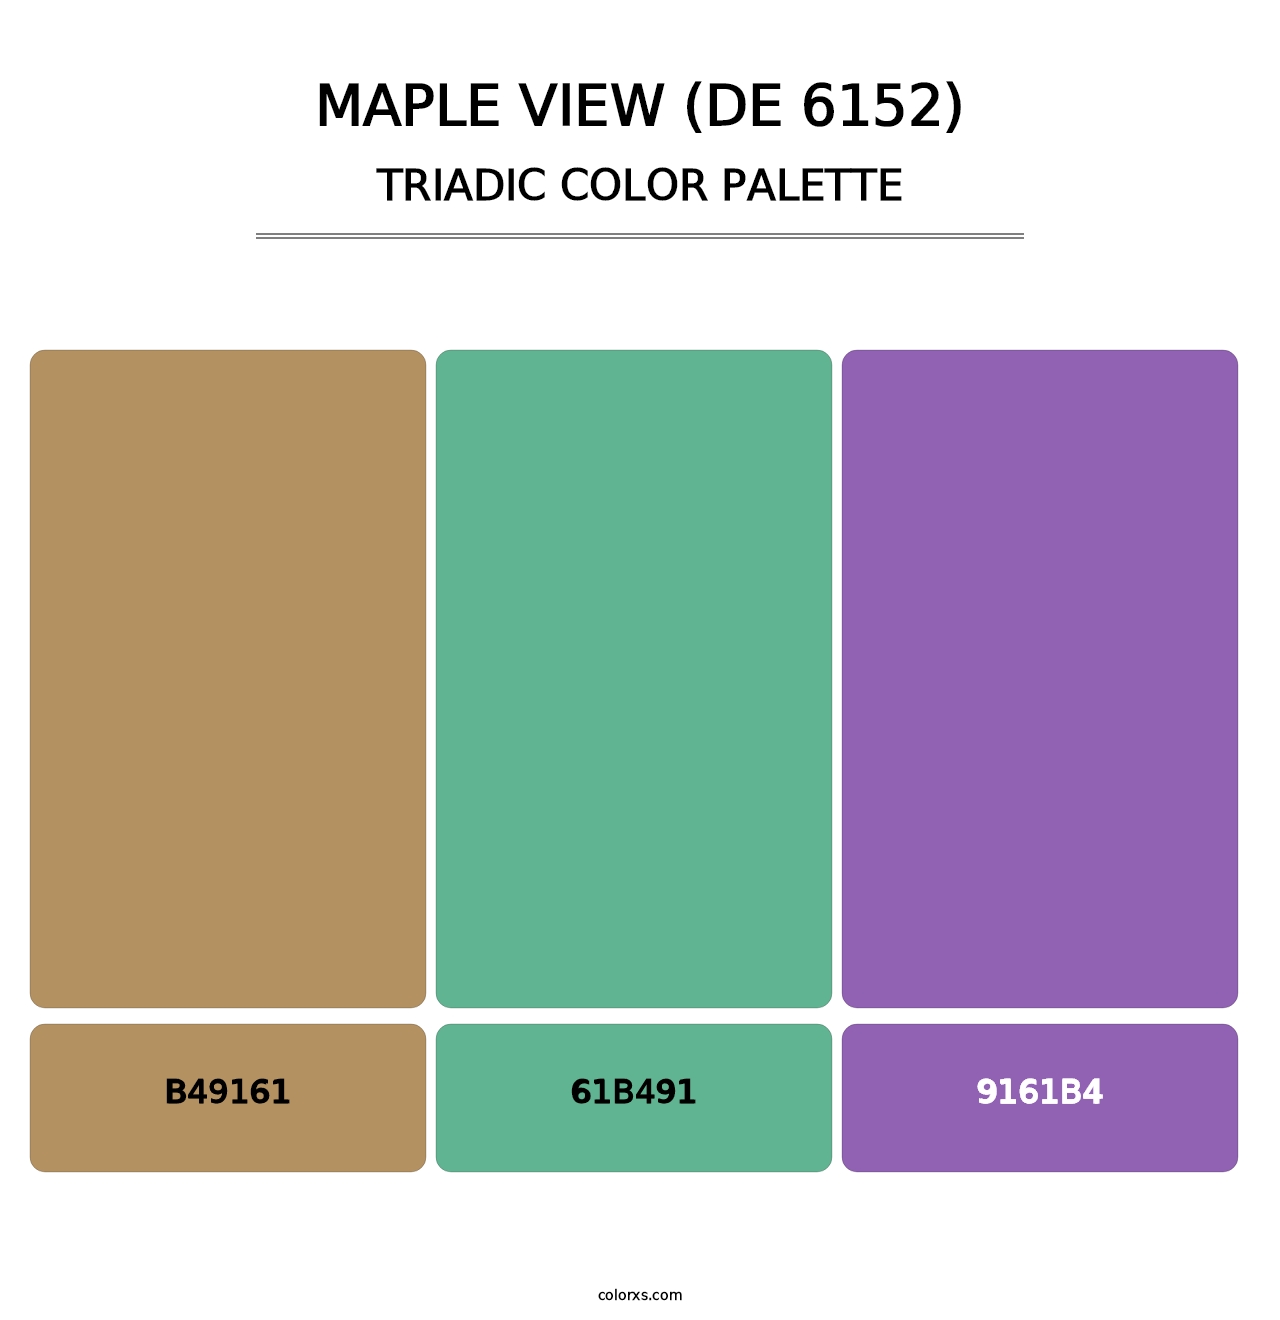 Maple View (DE 6152) - Triadic Color Palette